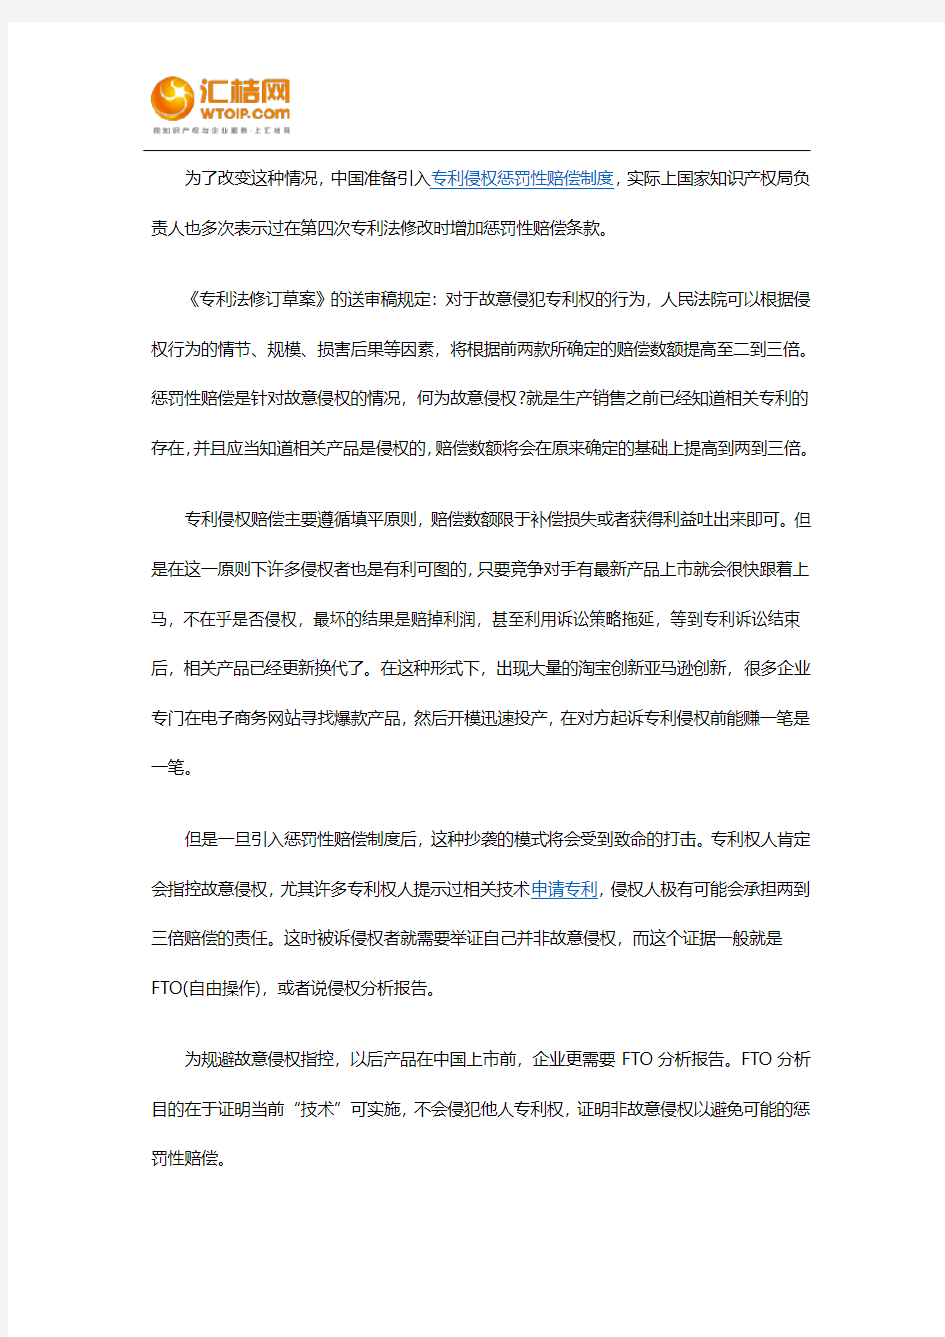 引入侵犯知识产权的惩罚性赔偿制度对中国企业的影响